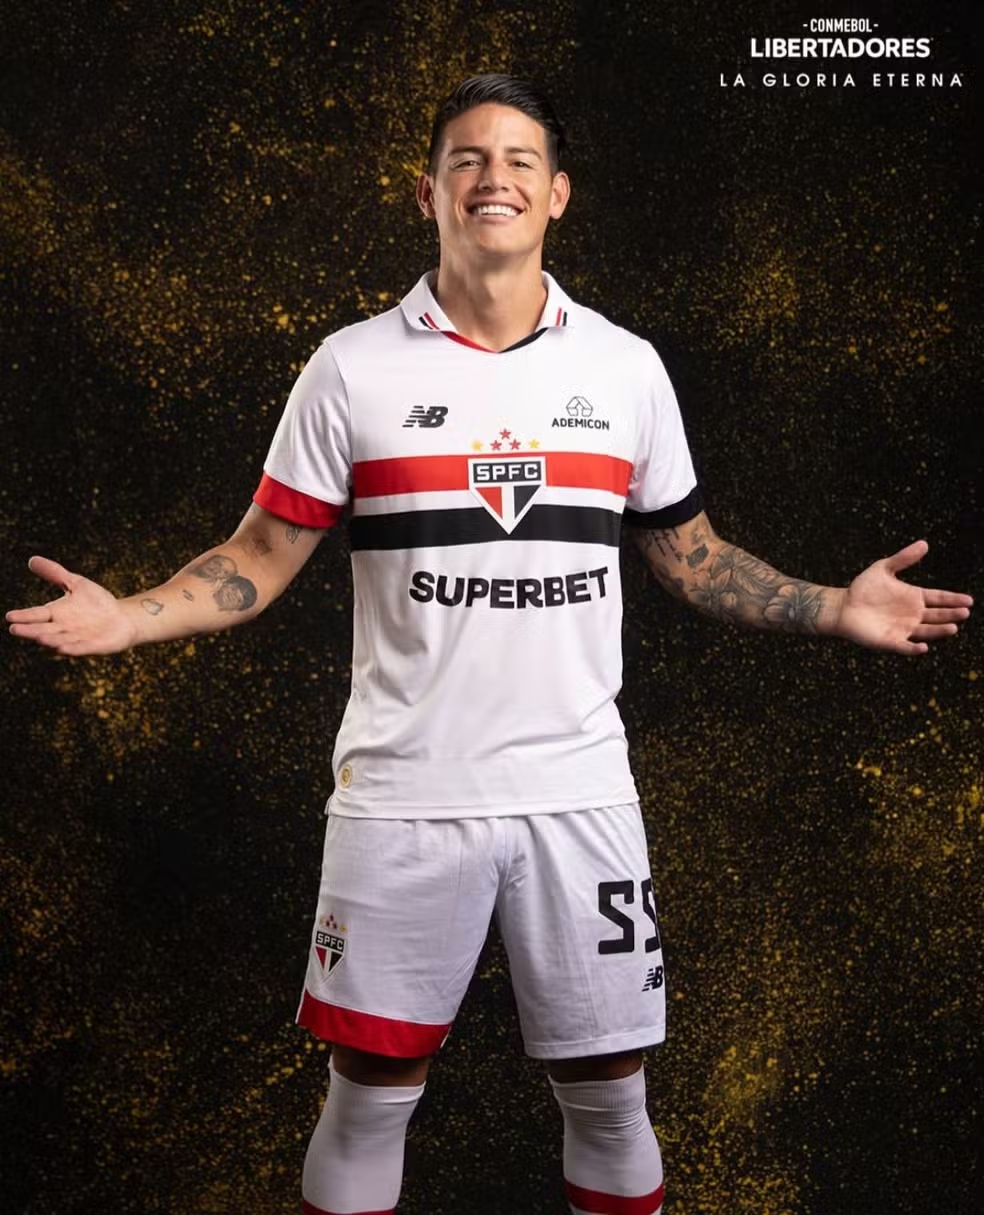 James Rodriguez De volta a Libertadores agora com a missao de levar o Sao Paulo ao topo